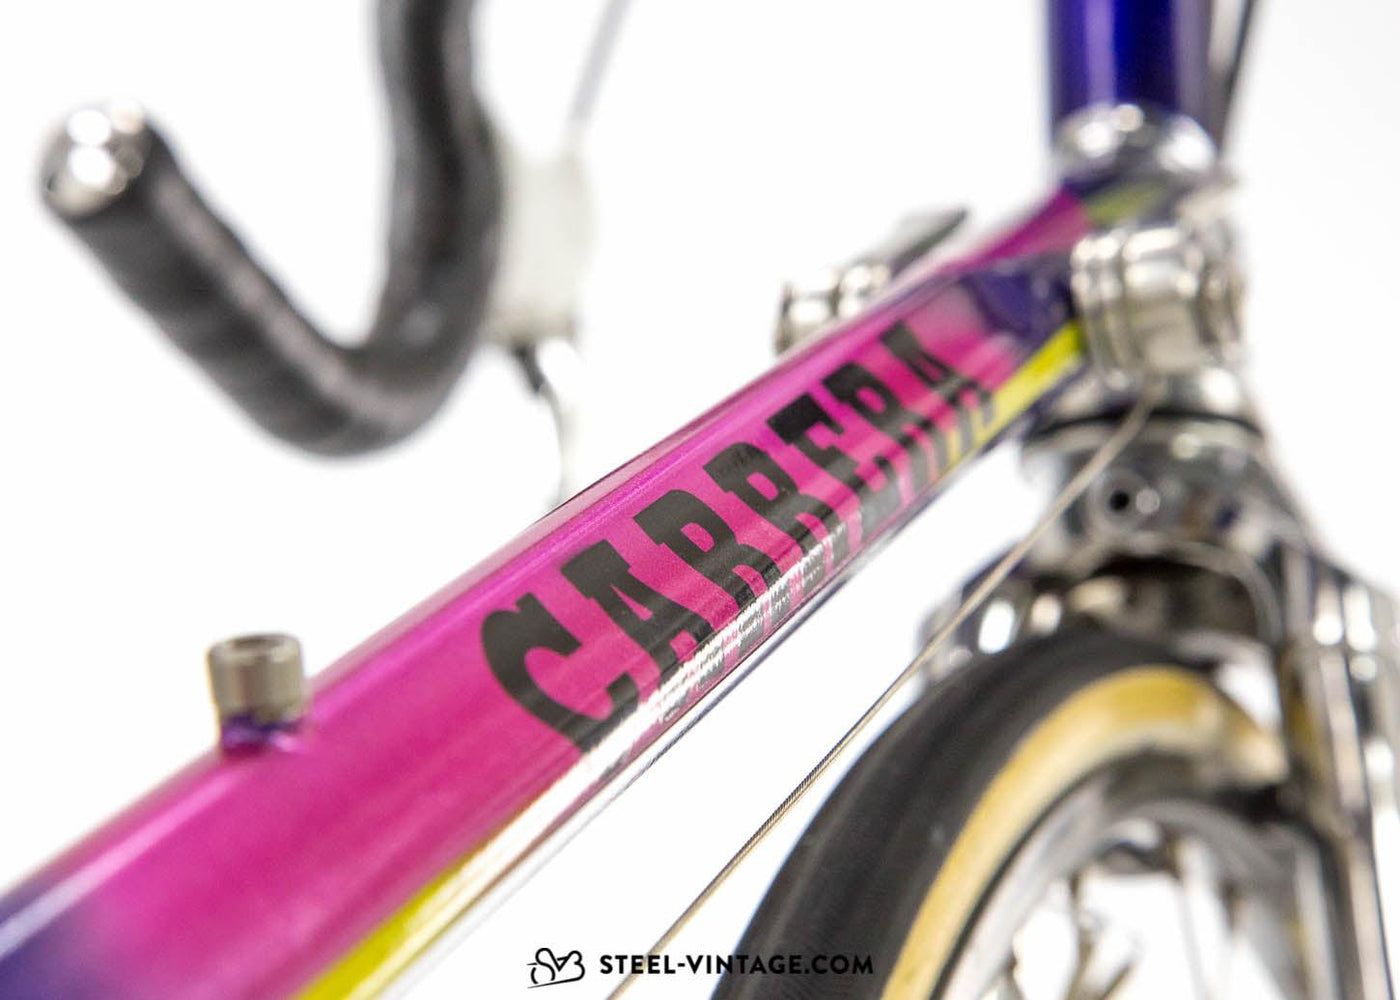 Carrera Nivacrom By Contini Racing Bike - Steel Vintage Bikes